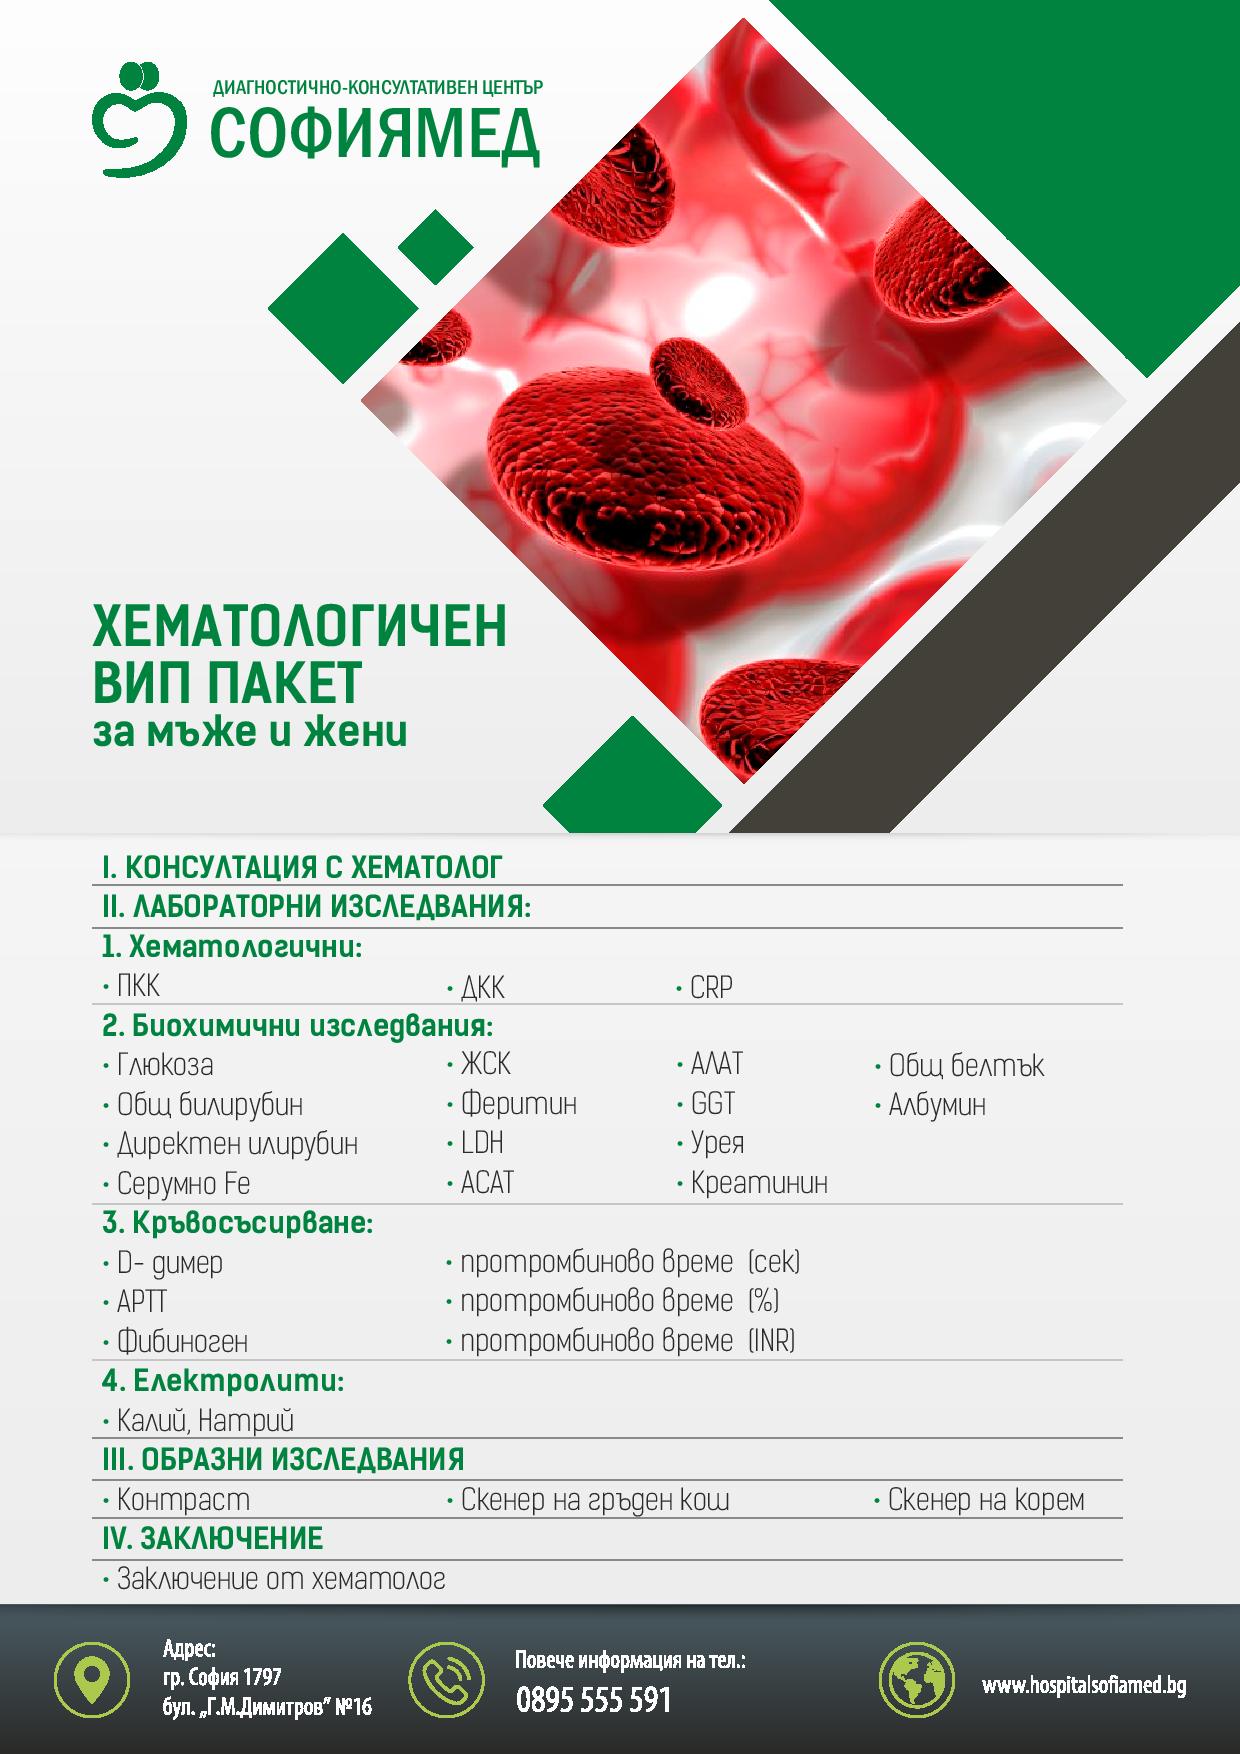 ДКЦ „СОФИЯМЕД“ с VIP хематологичен пакет